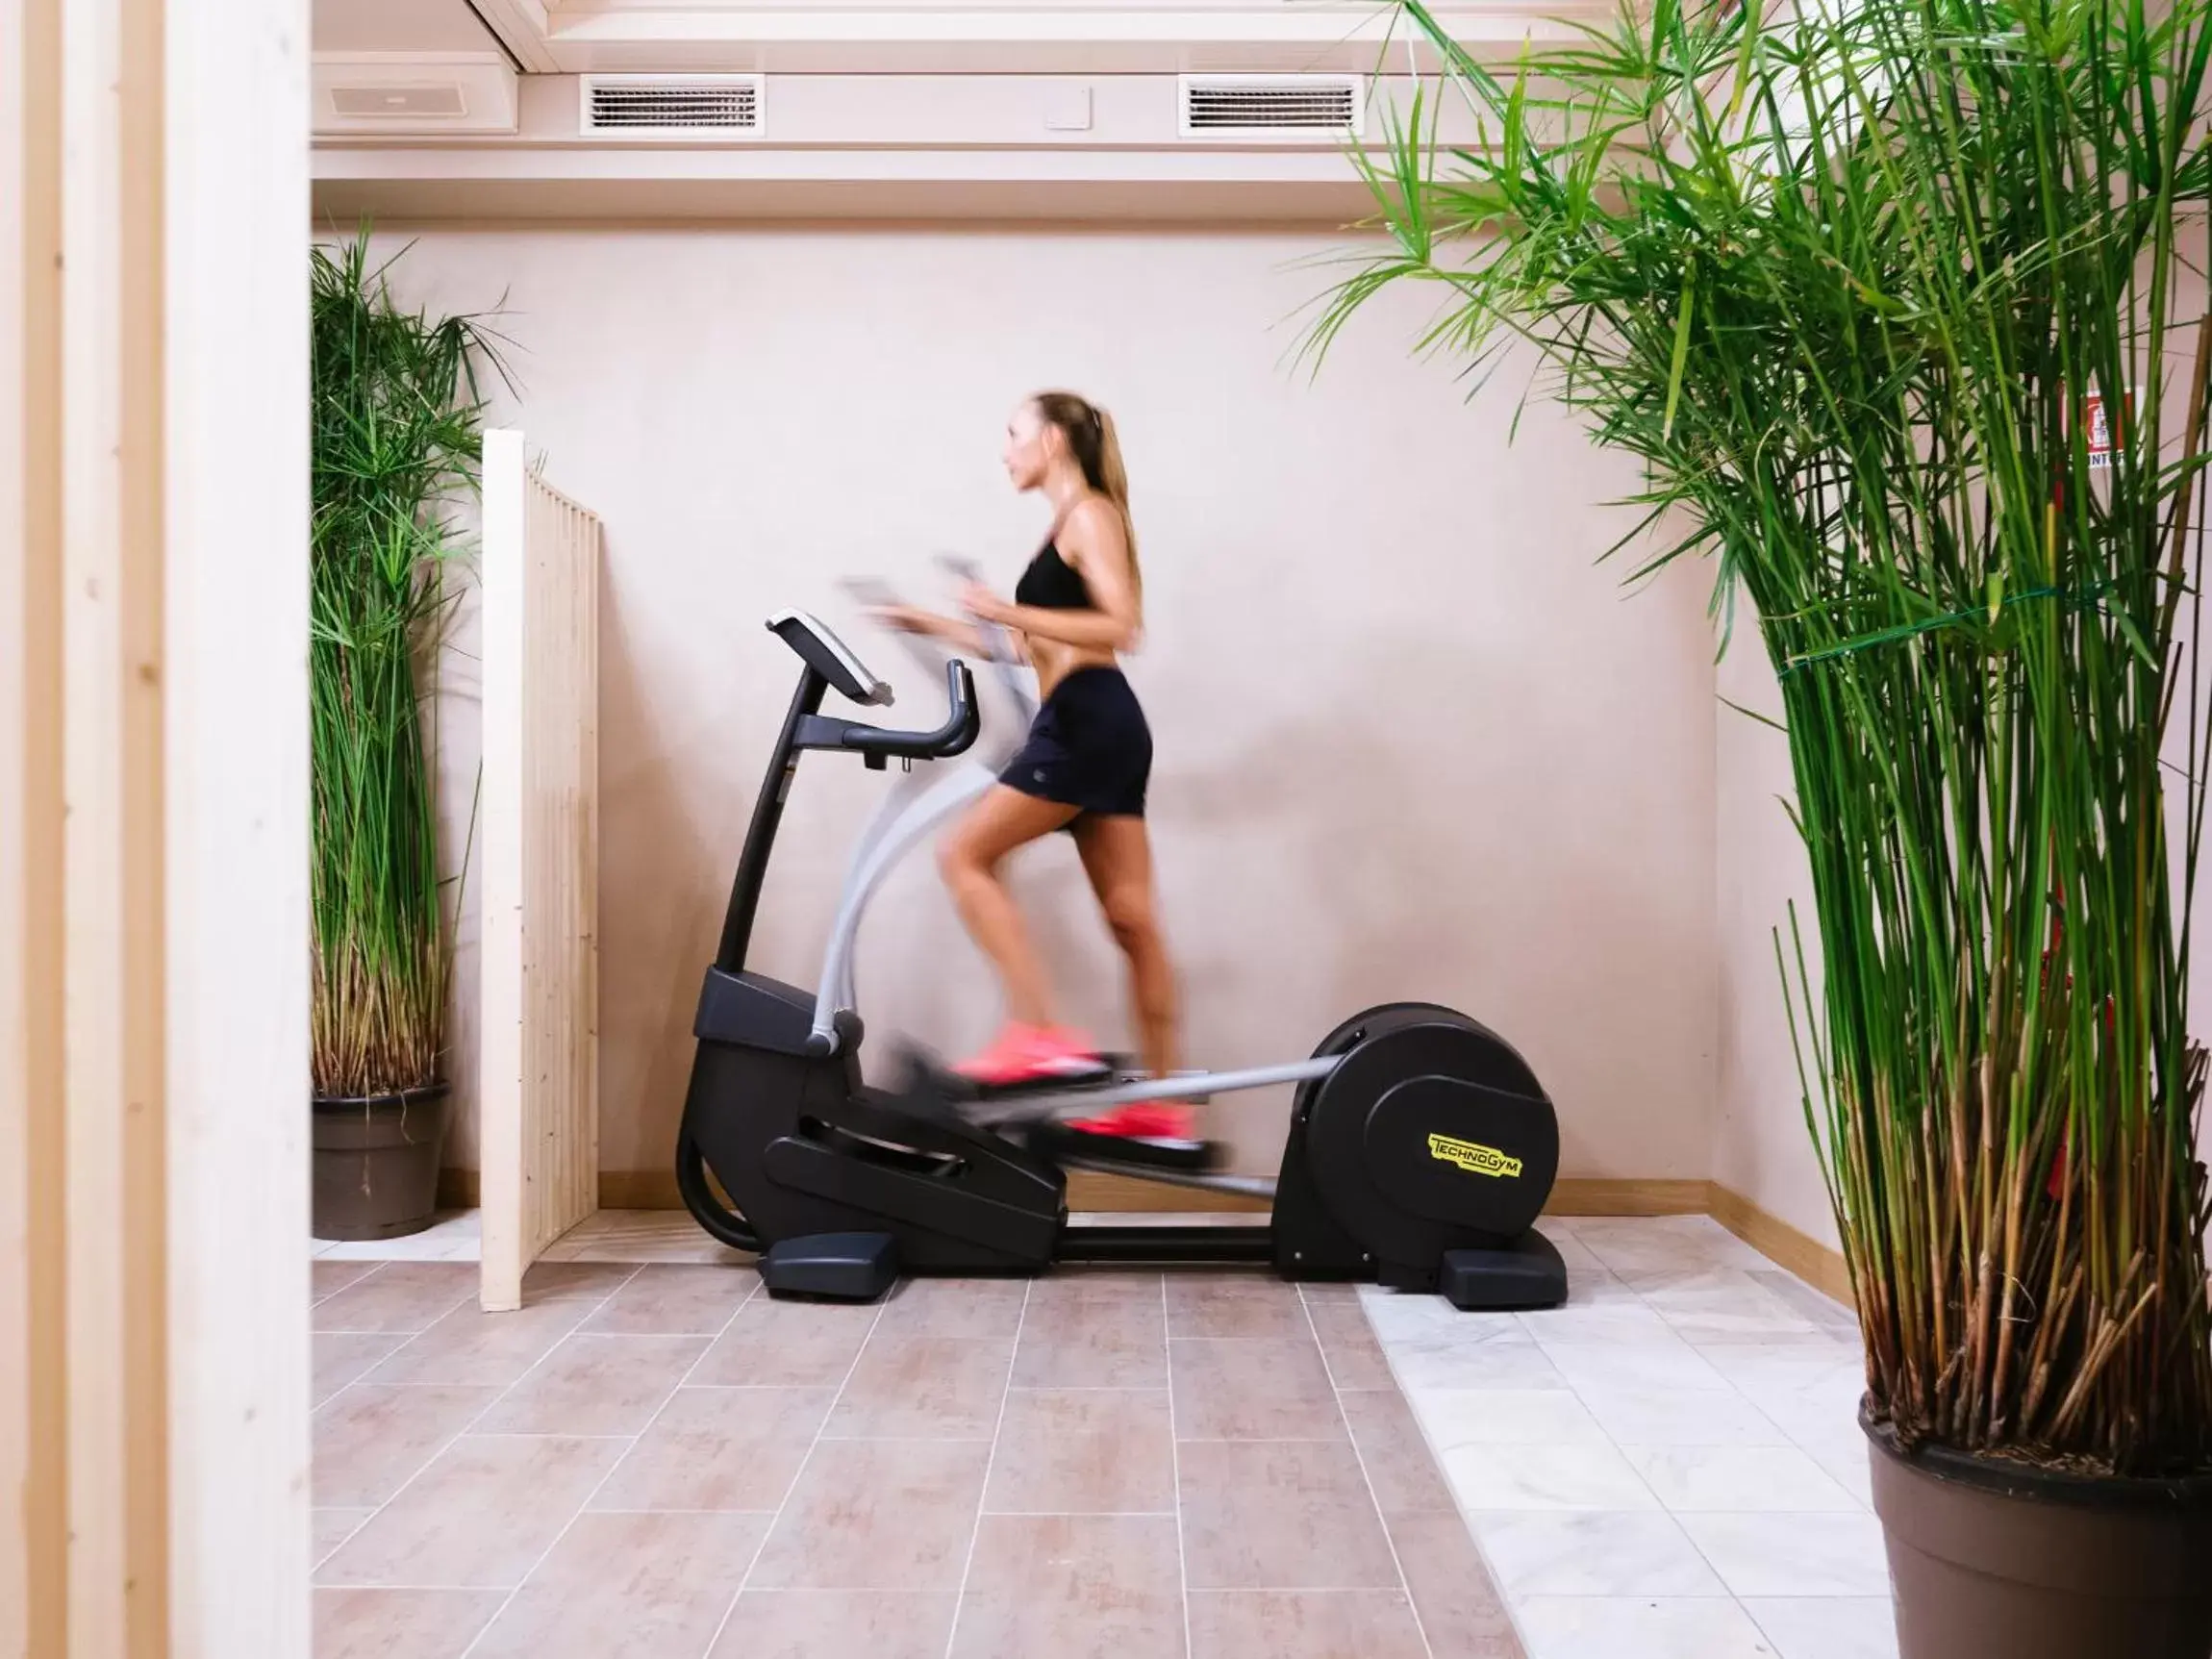 Activities, Fitness Center/Facilities in Palazzo BelVedere